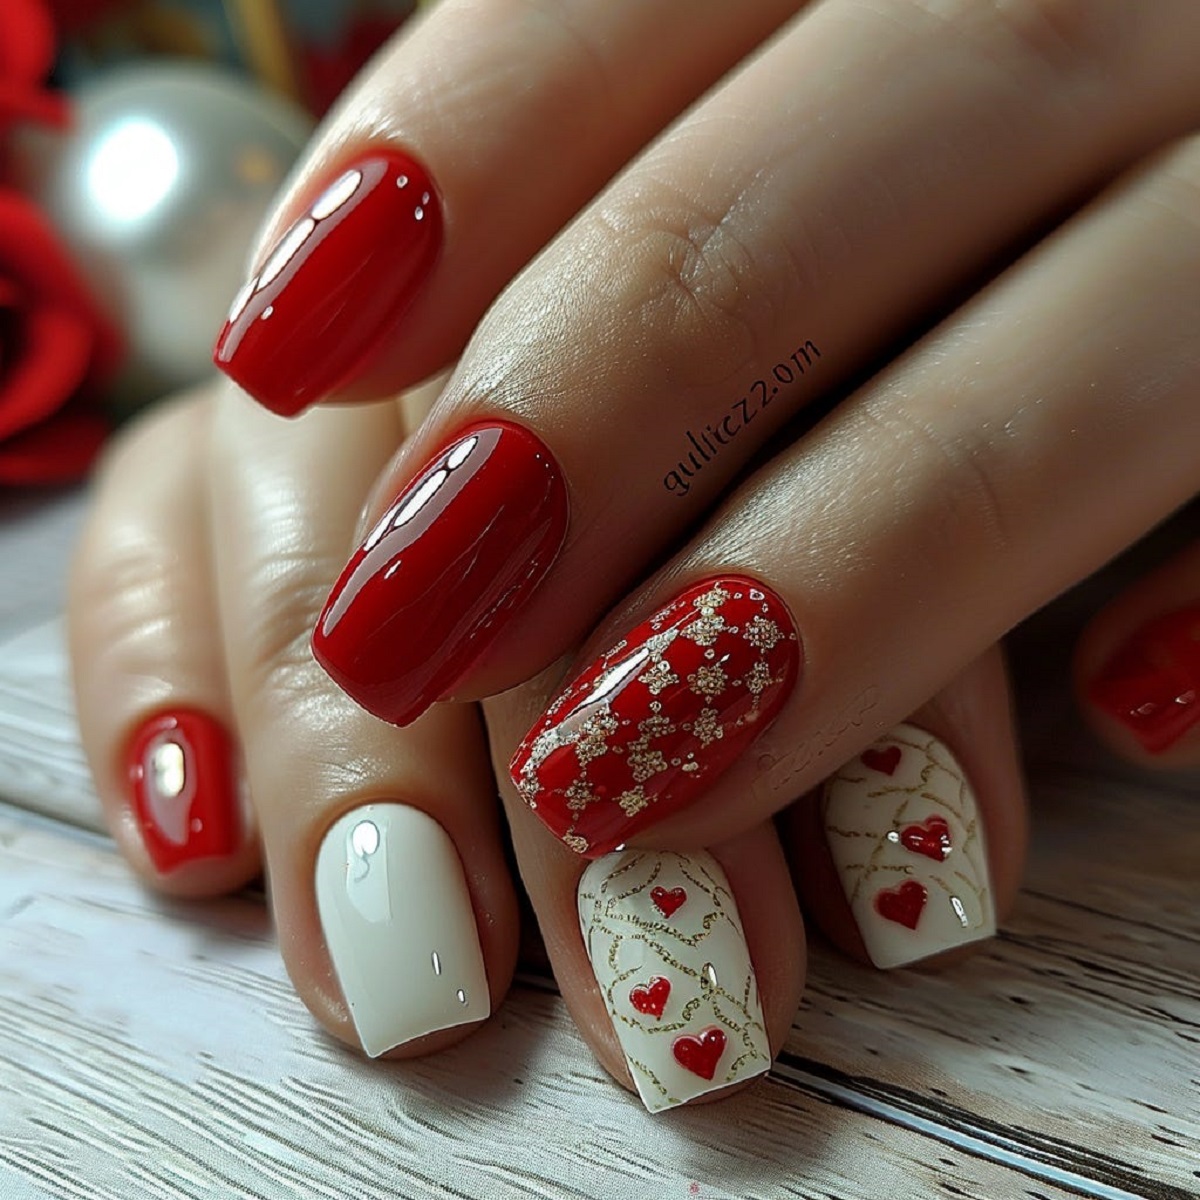 Red Valentine nails